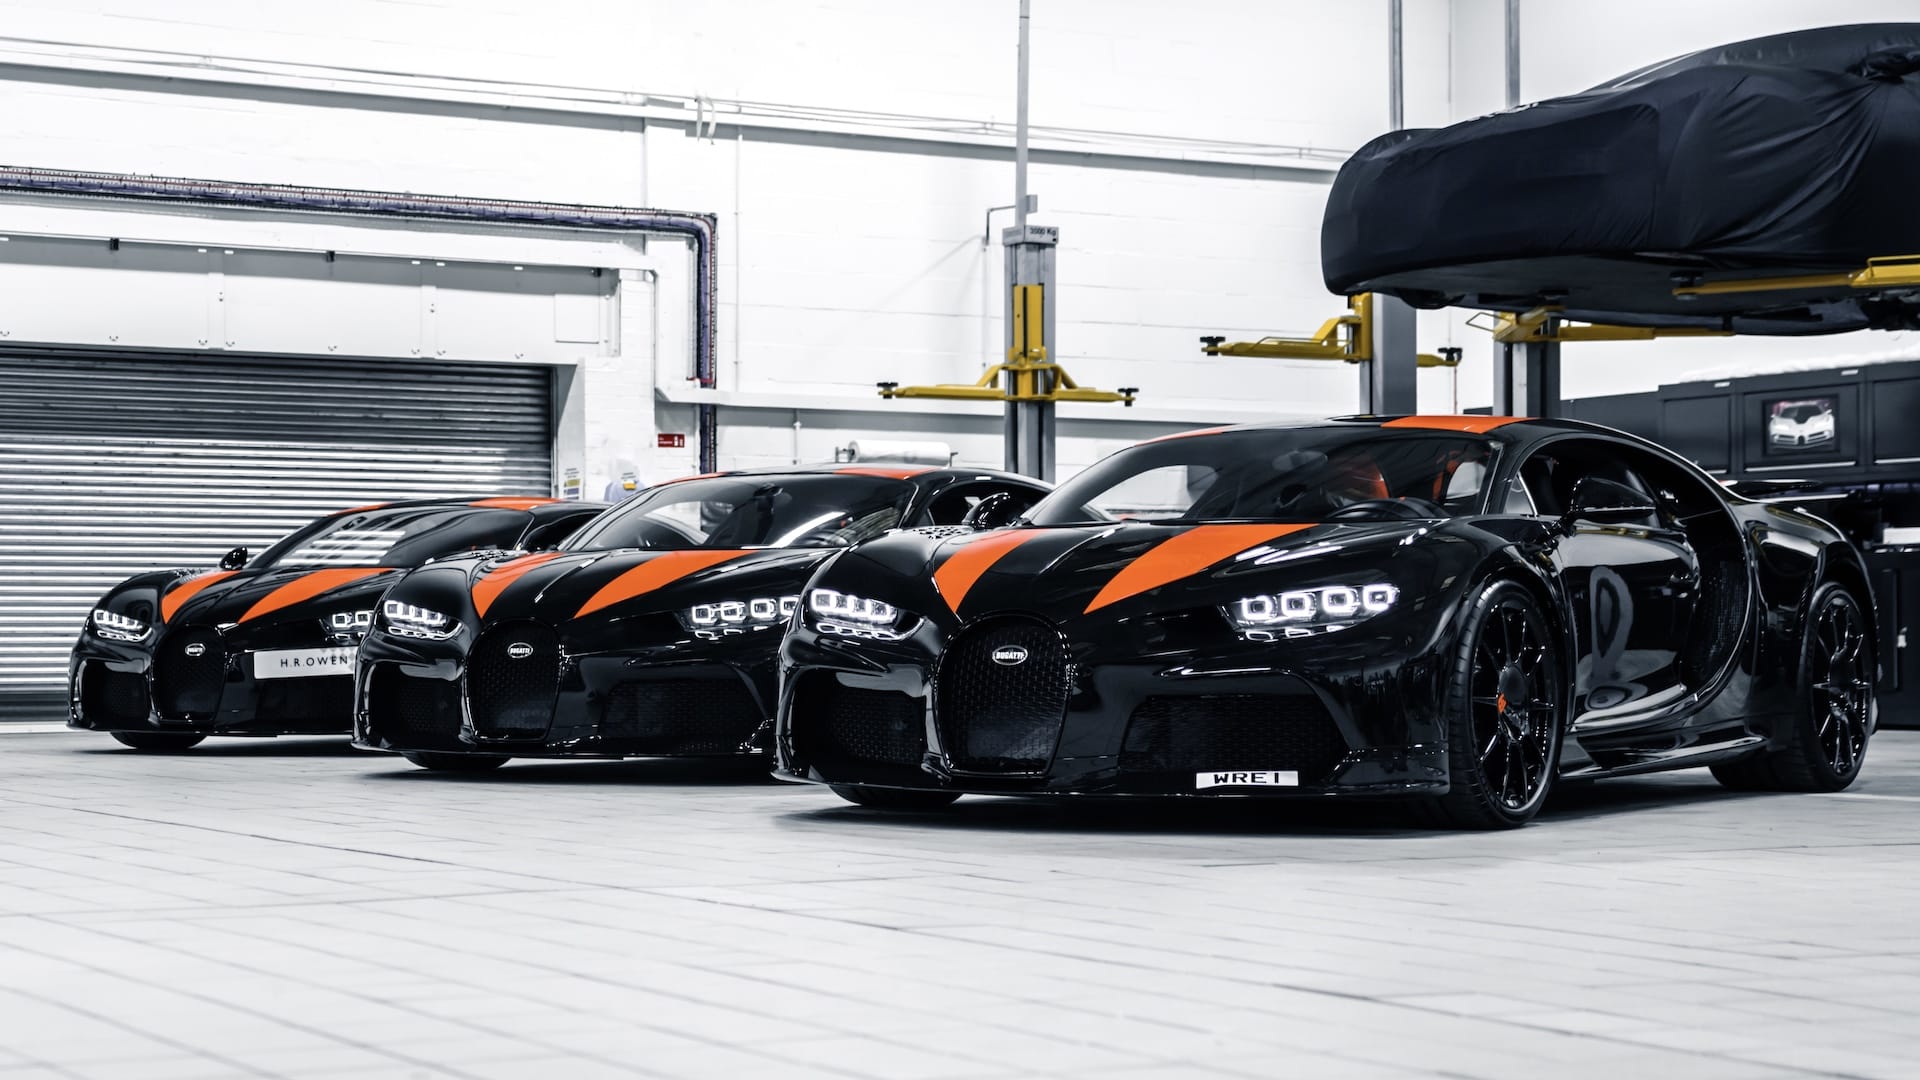 Trio of 304mph Bugatti Chiron Super Sports delivered to London